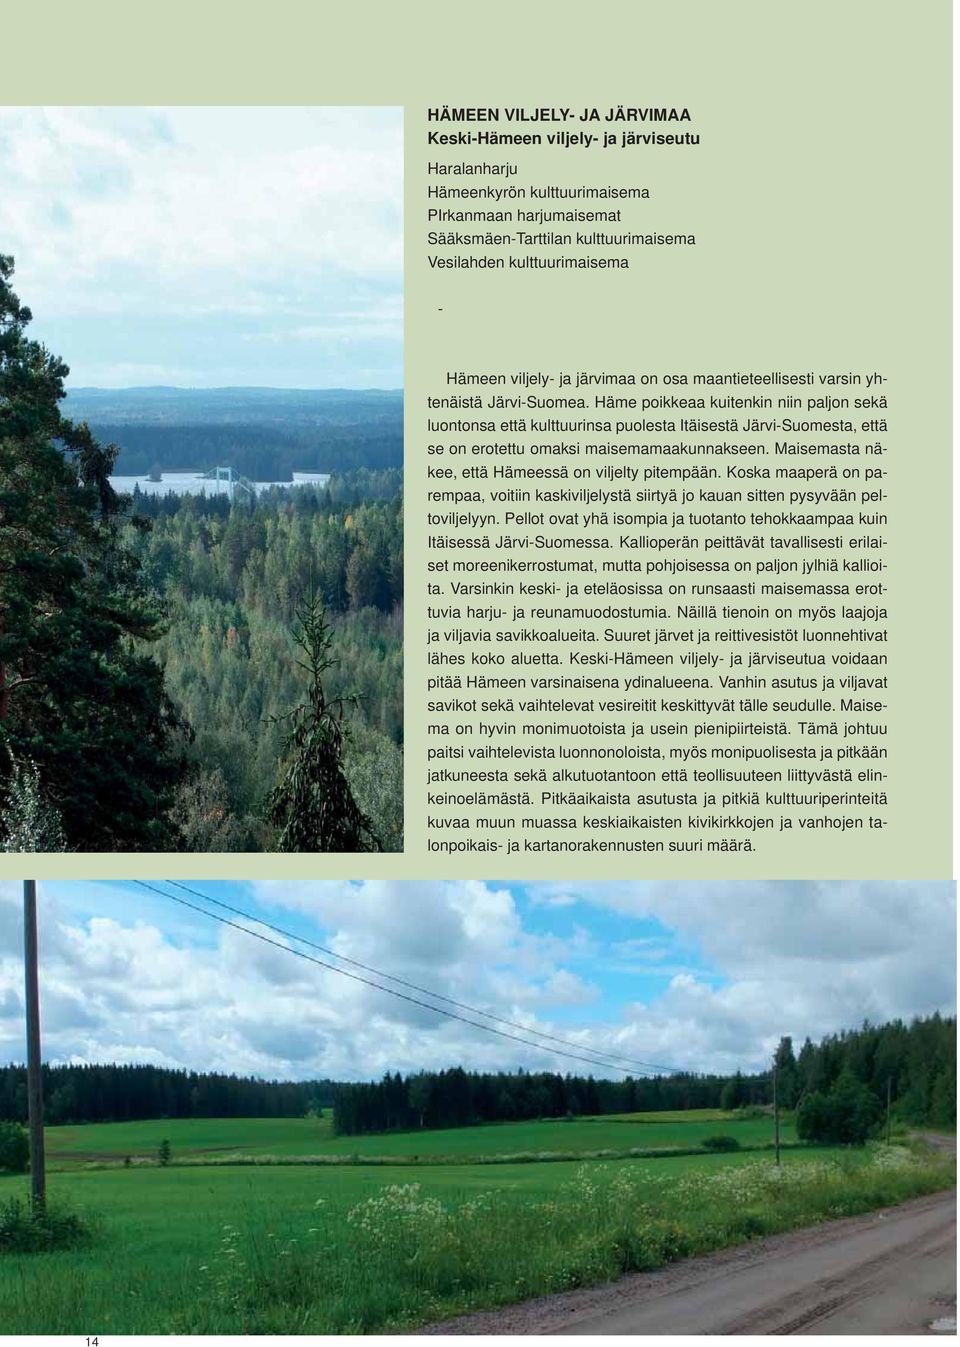 Häme poikkeaa kuitenkin niin paljon sekä luontonsa että kulttuurinsa puolesta Itäisestä Järvi-Suomesta, että se on erotettu omaksi maisemamaakunnakseen.